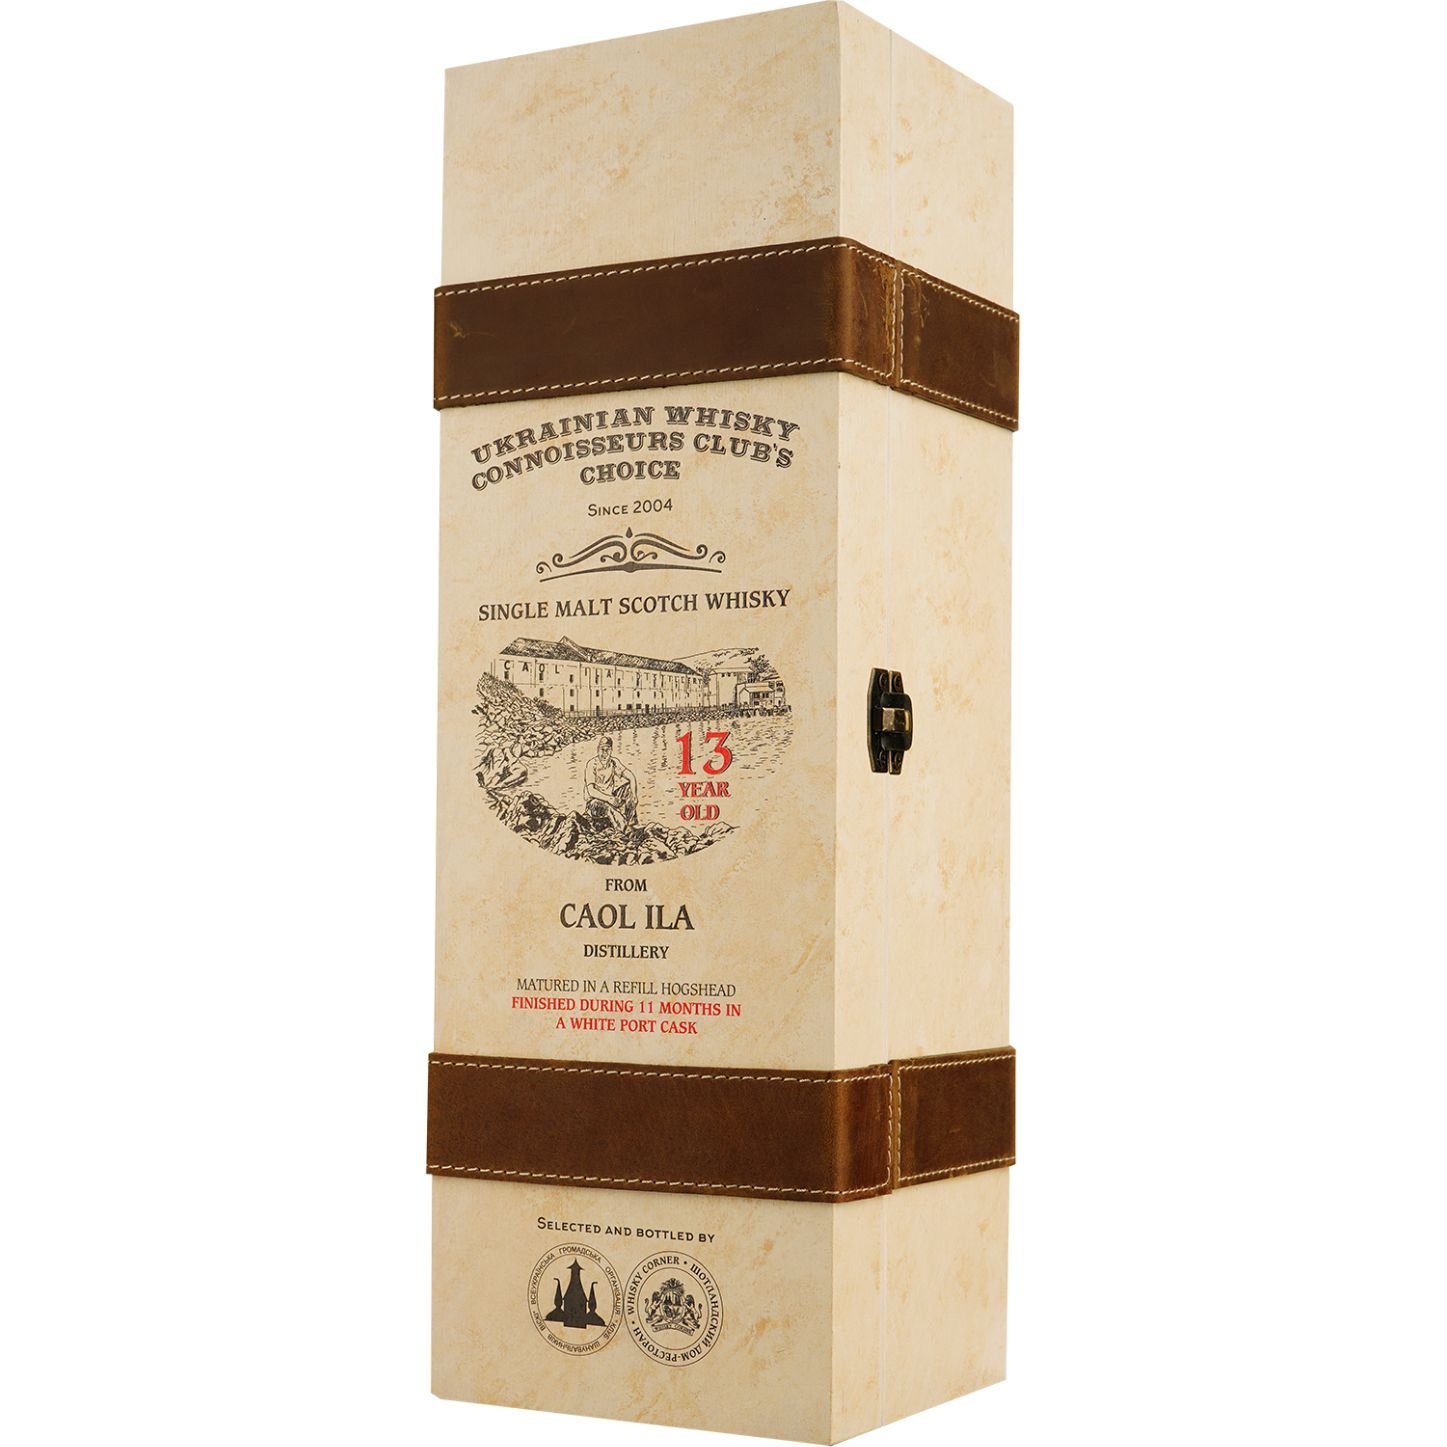 Віскі Caol Ila 13 Years Old White Porto Single Malt Scotch Whisky, у подарунковій упаковці, 55,2%, 0,7 л - фото 3